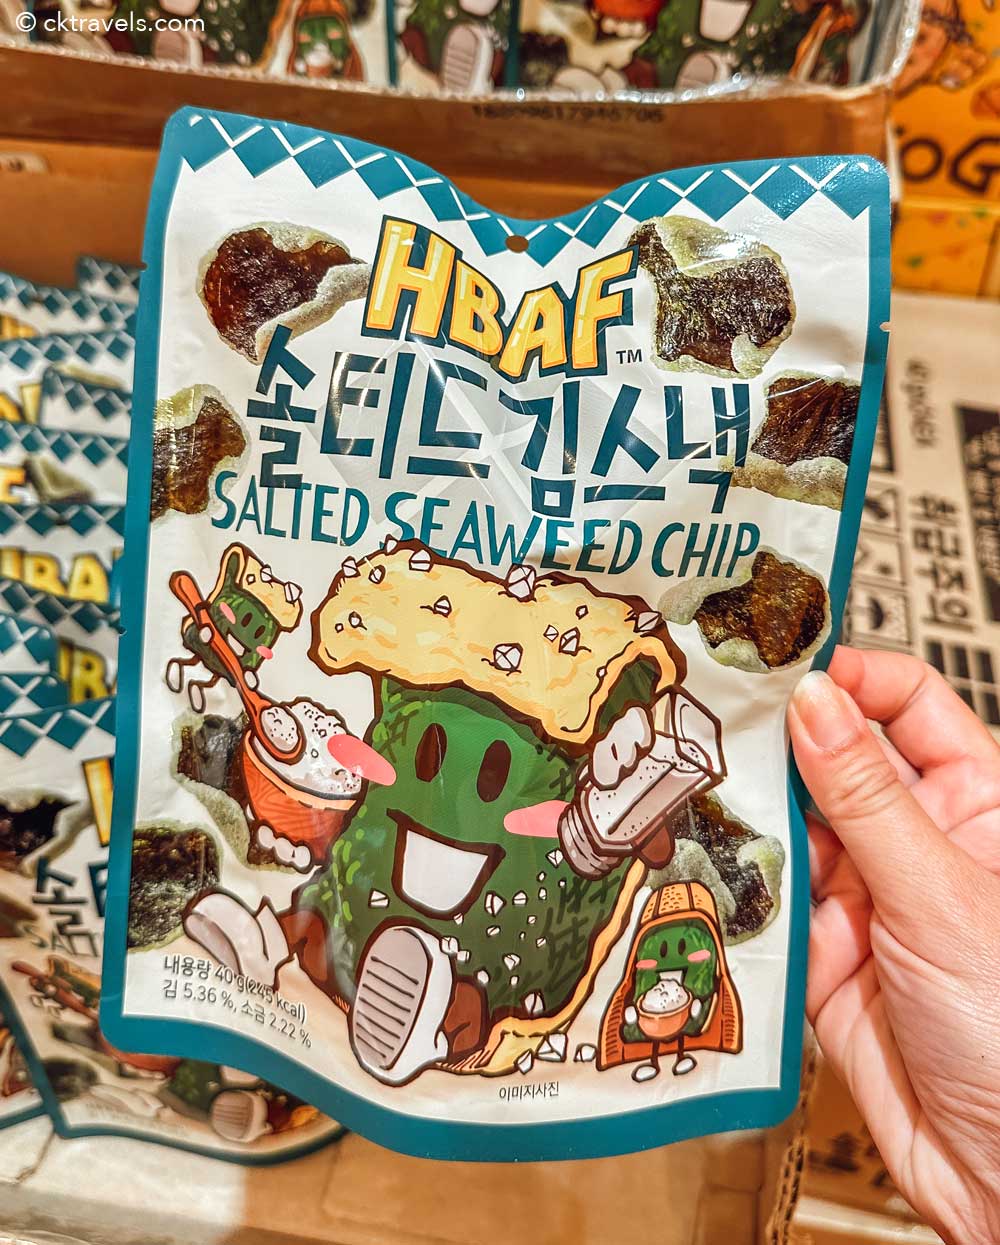 HBAF salted seaweed chips Korea